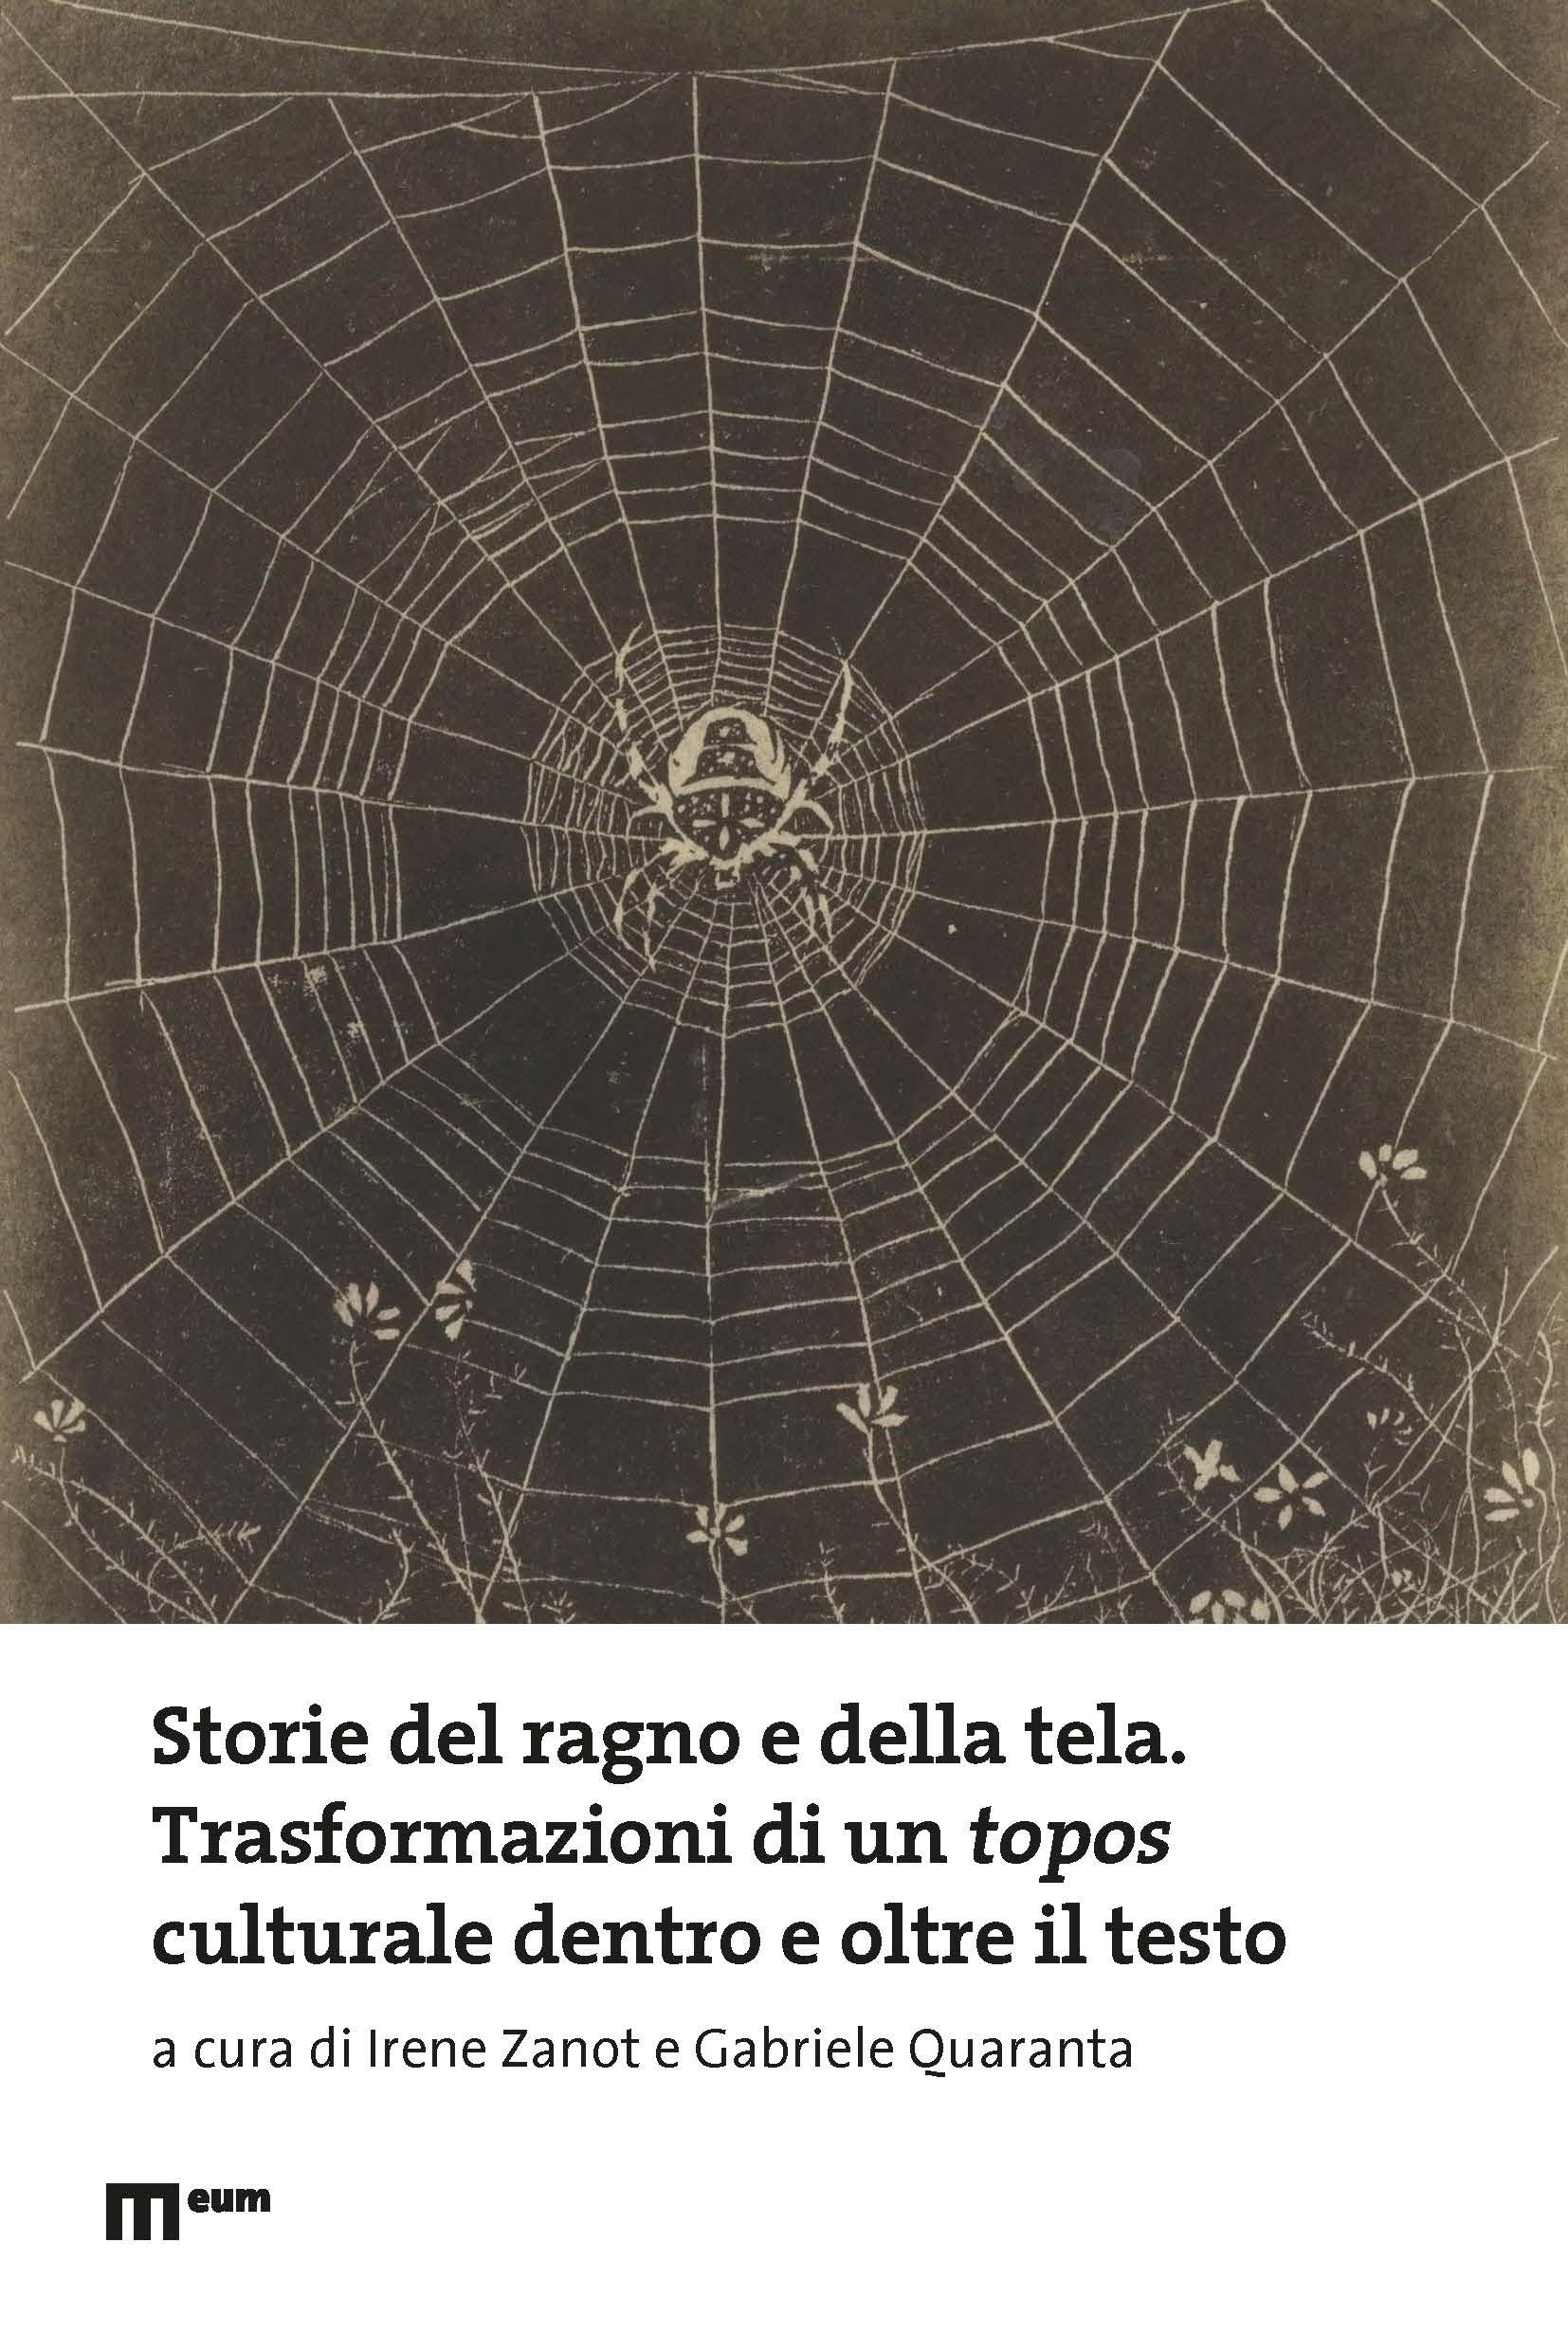 Storie del ragno e della tela. Trasformazioni di un topos culturale dentro e oltre il testo